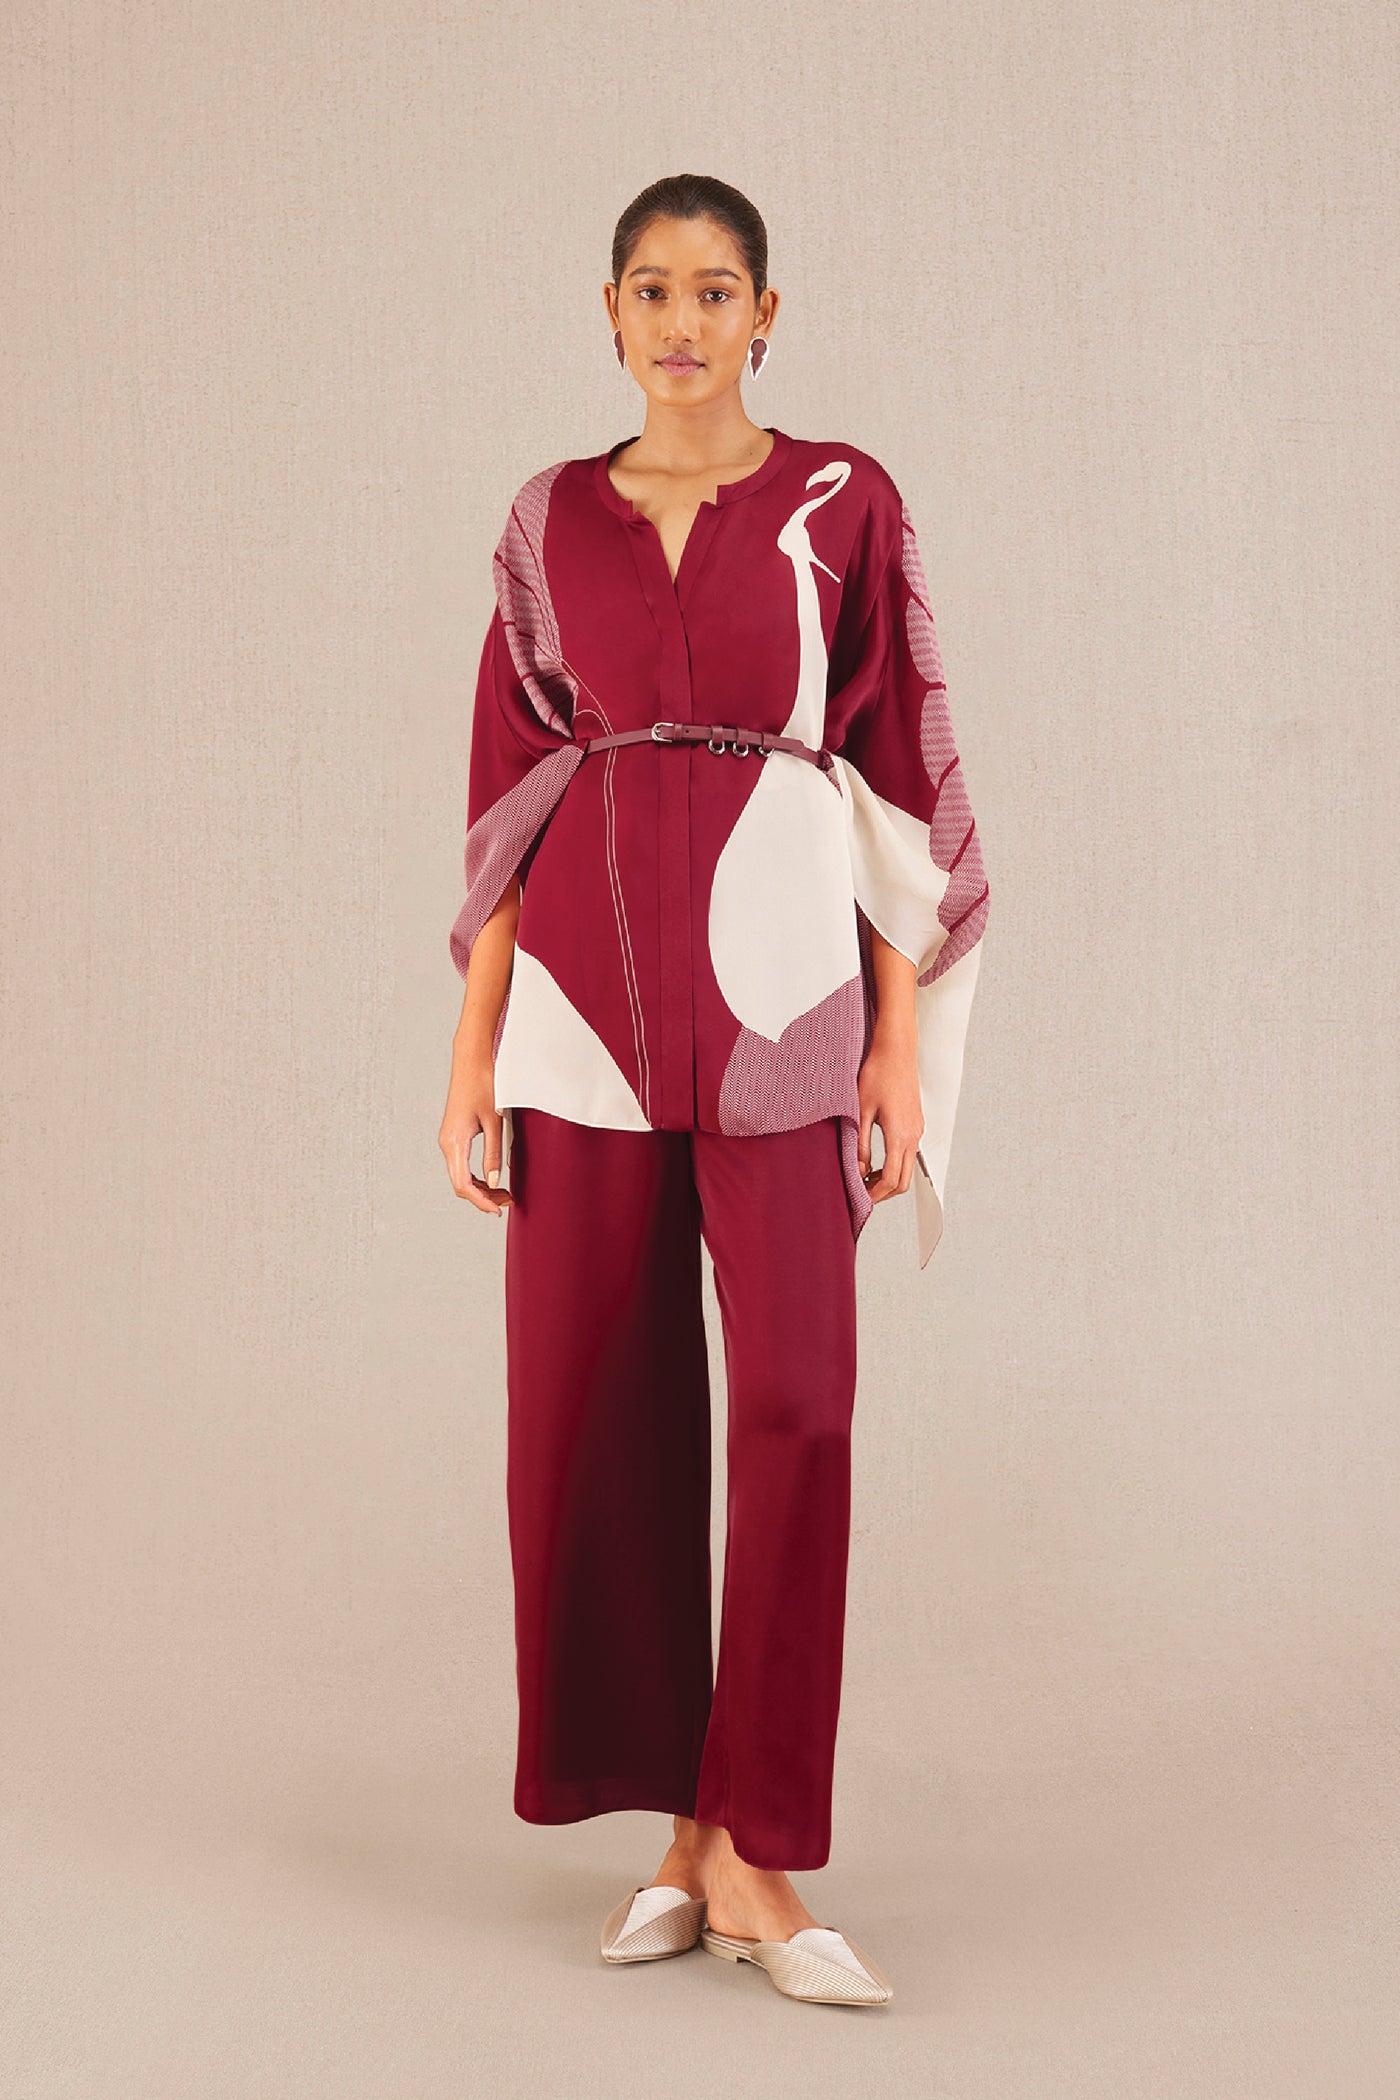 AMPM Adah Kaftan Set indian designer wear online shopping melange singapore